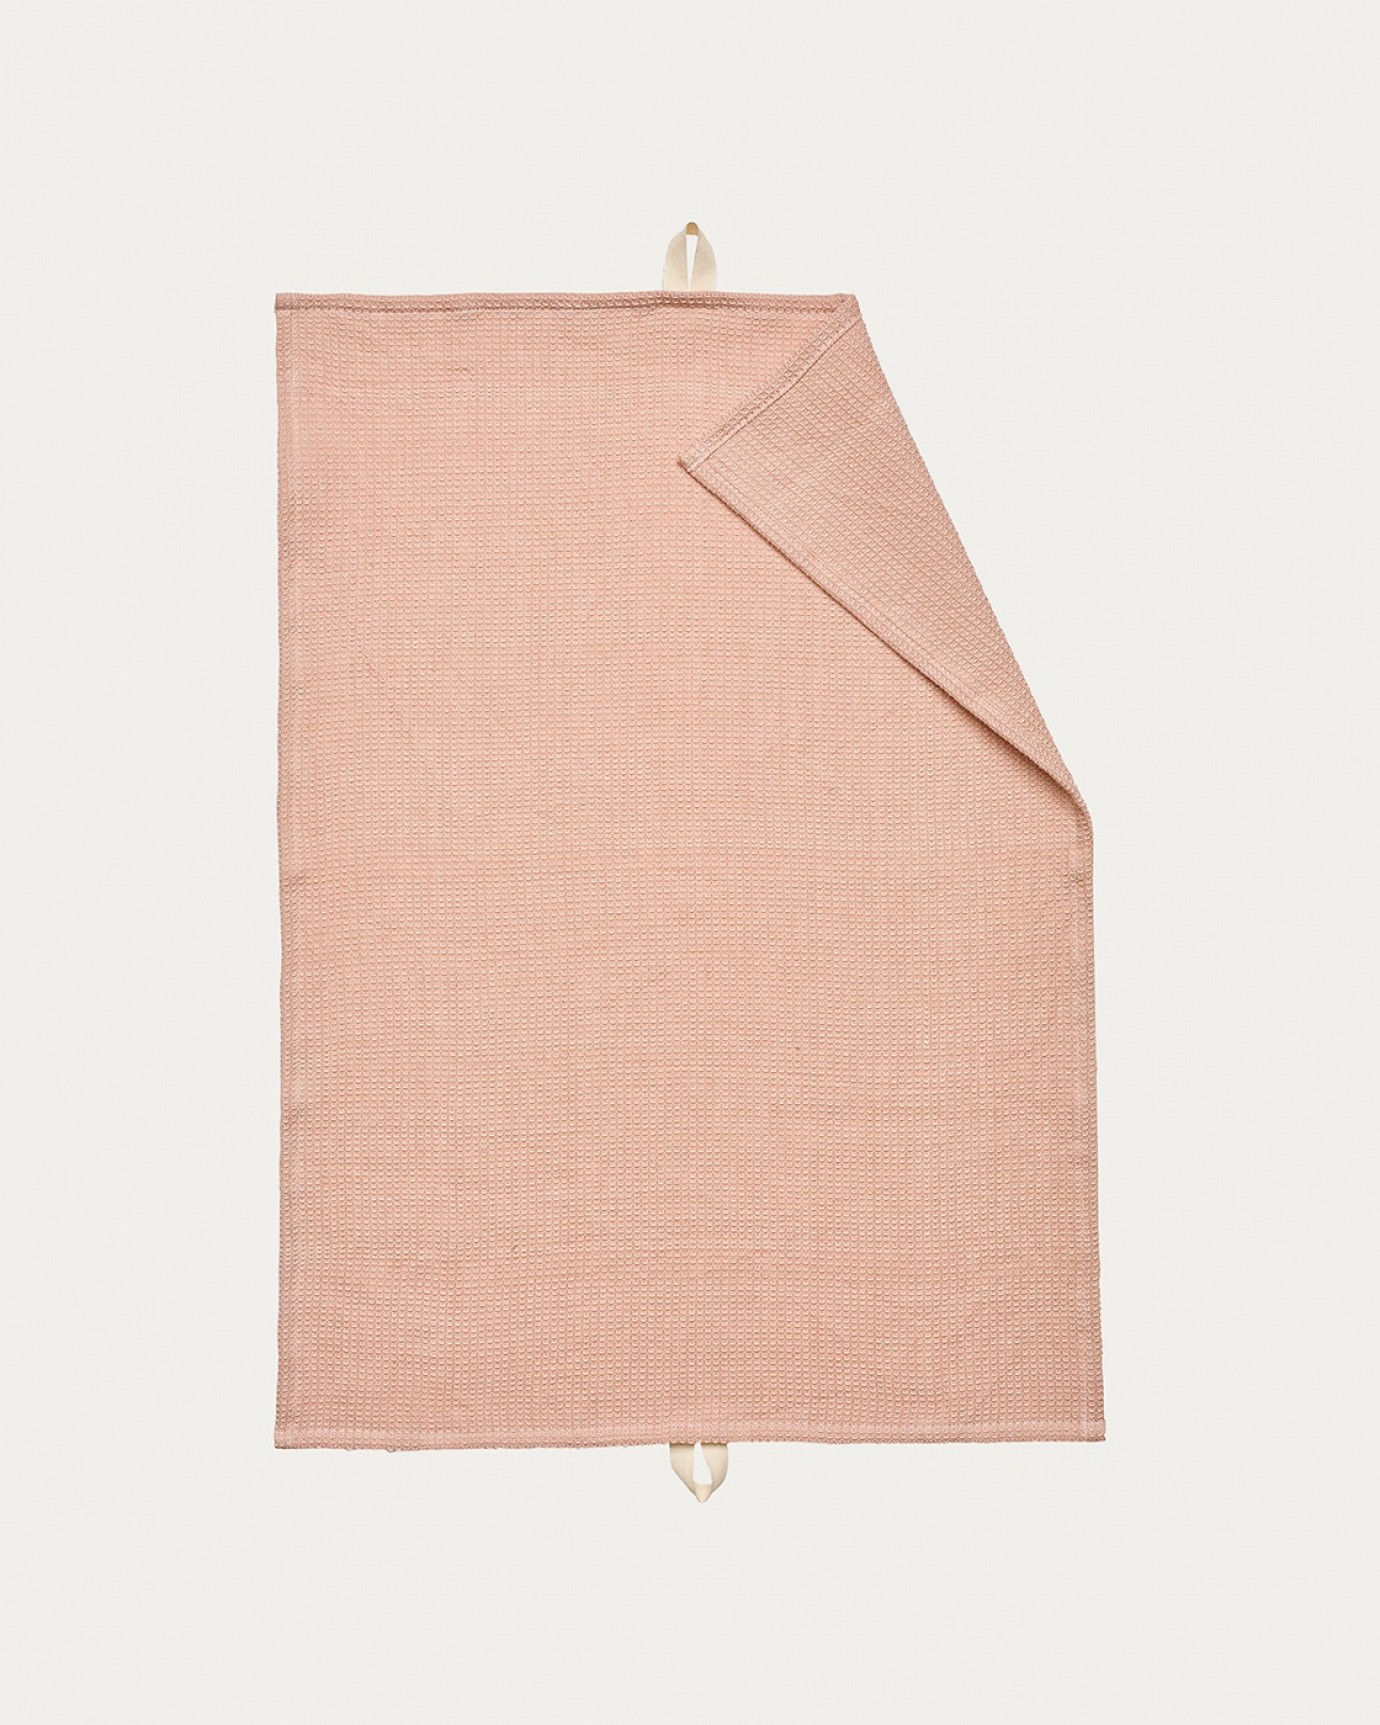 Image du produit torchon AGNES rose poudré en coton doux à structure gaufrée de LINUM DESIGN. Taille 50 x 70 cm.